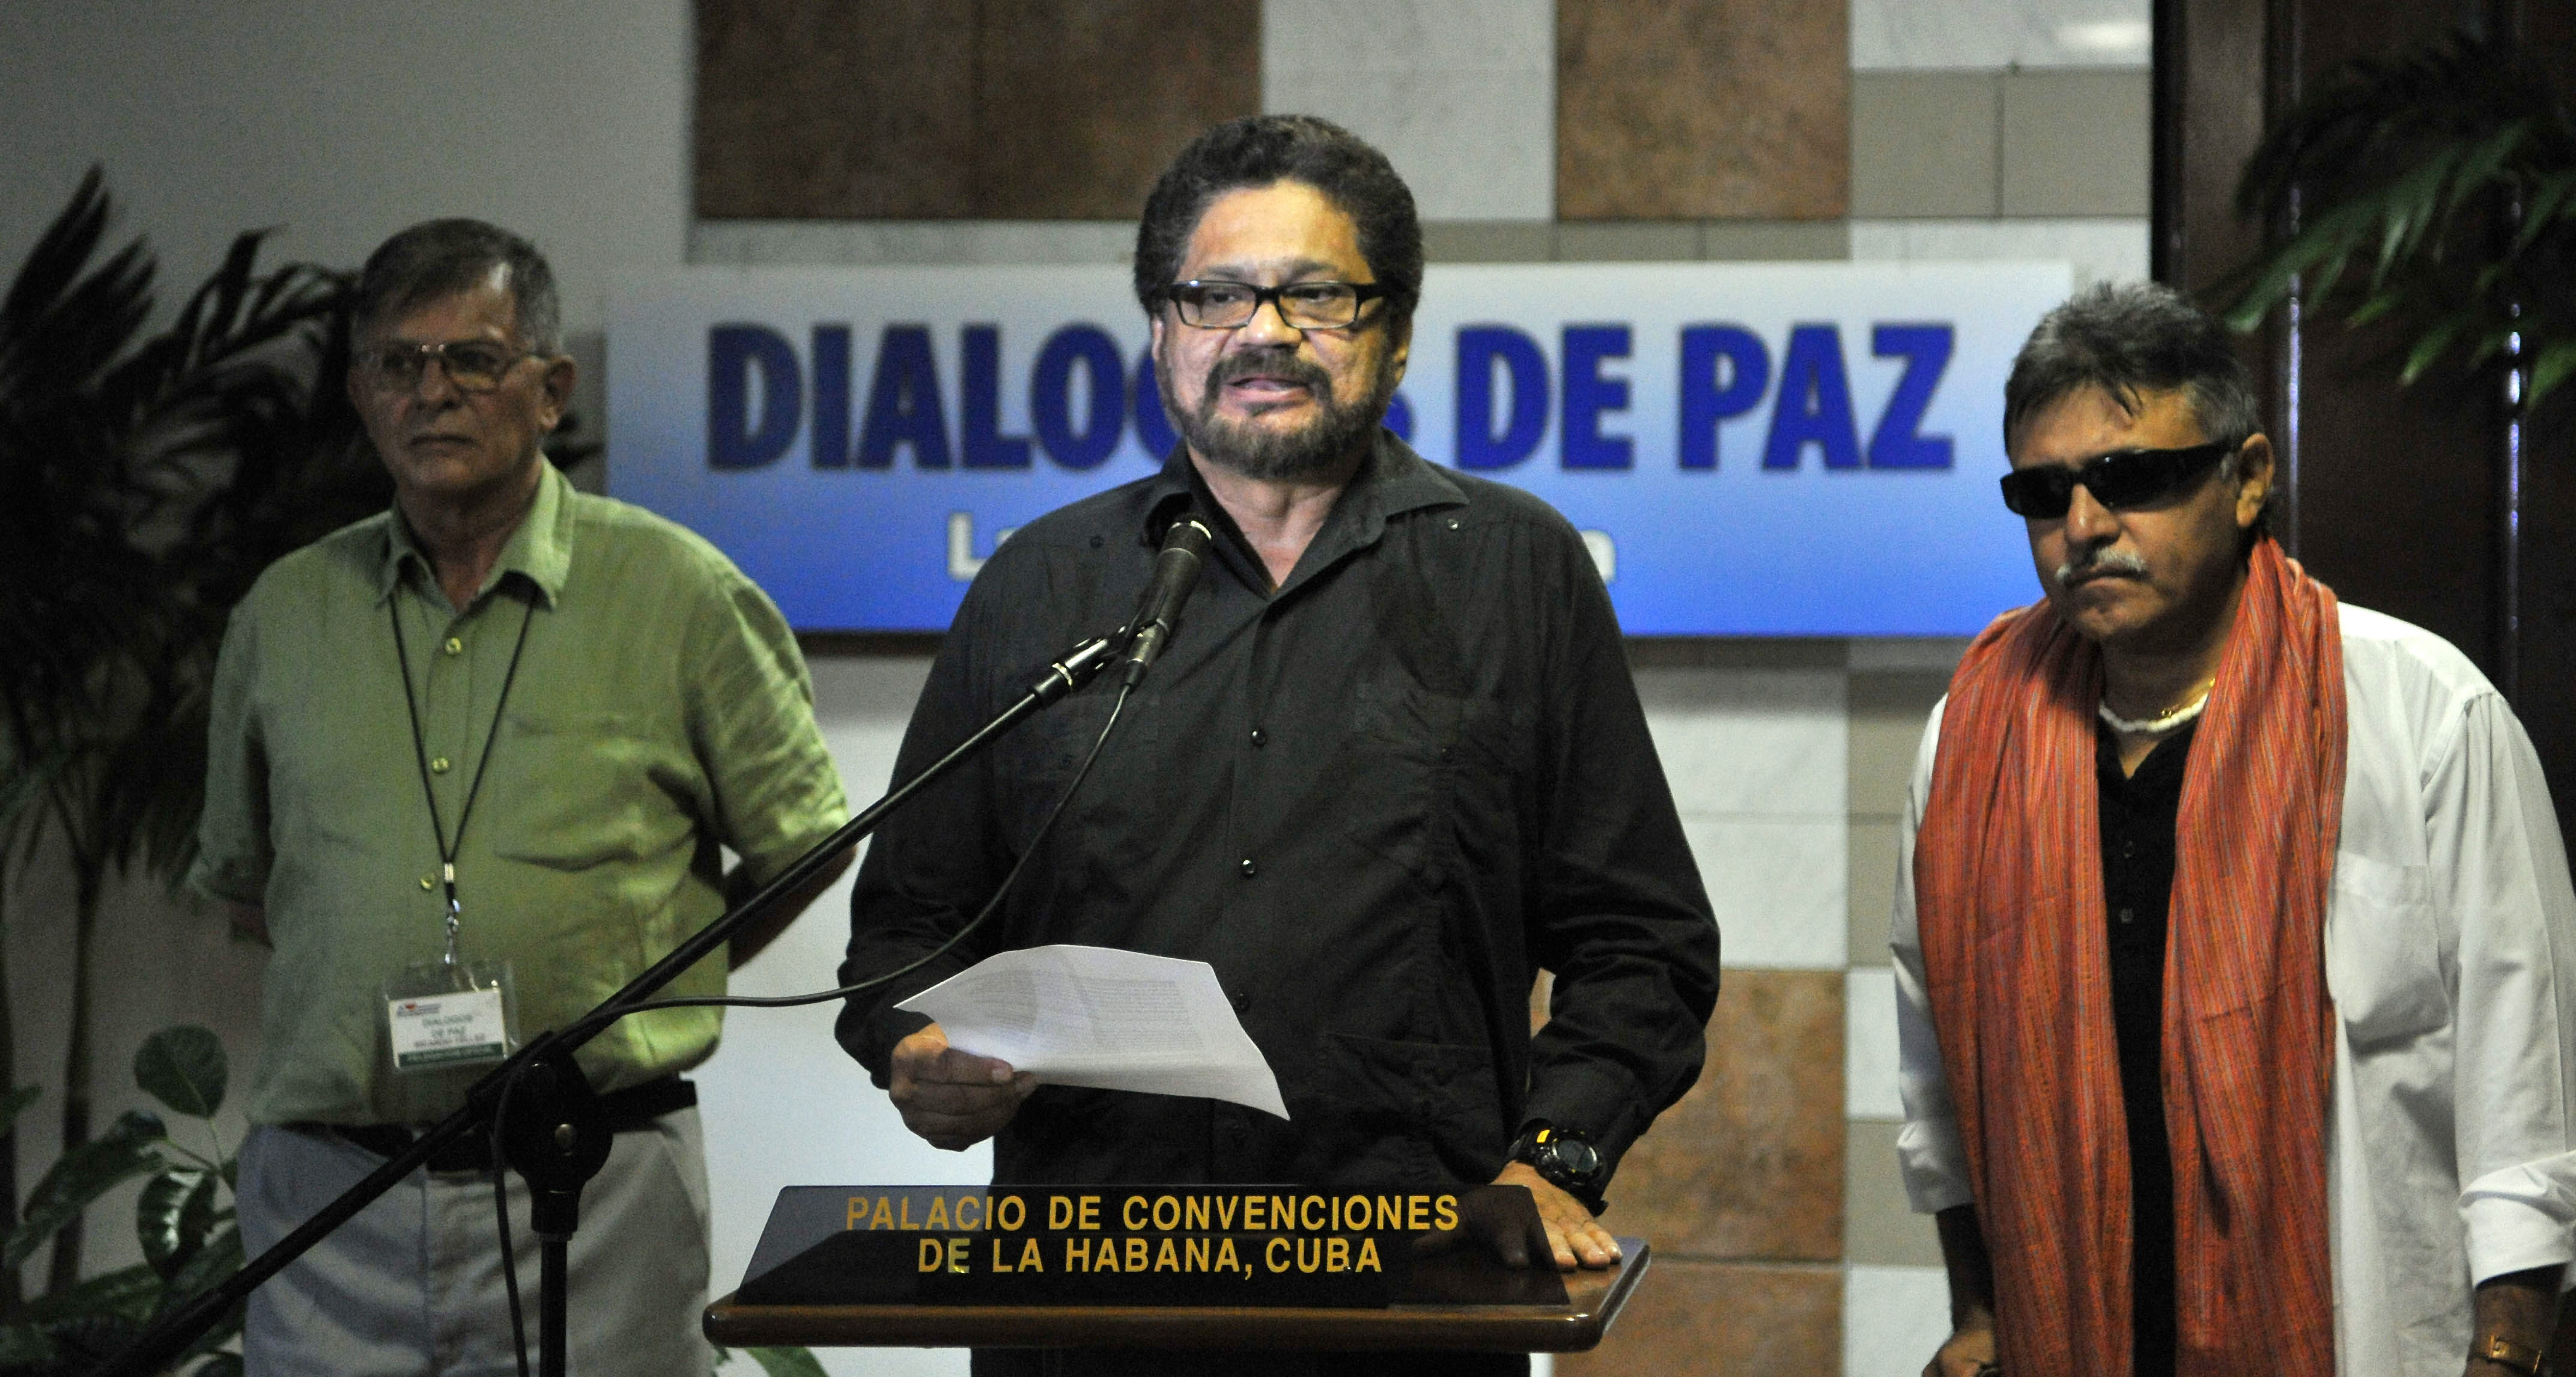 Las FARC podría llegar al Congreso sin elecciones debido al diálogo de paz